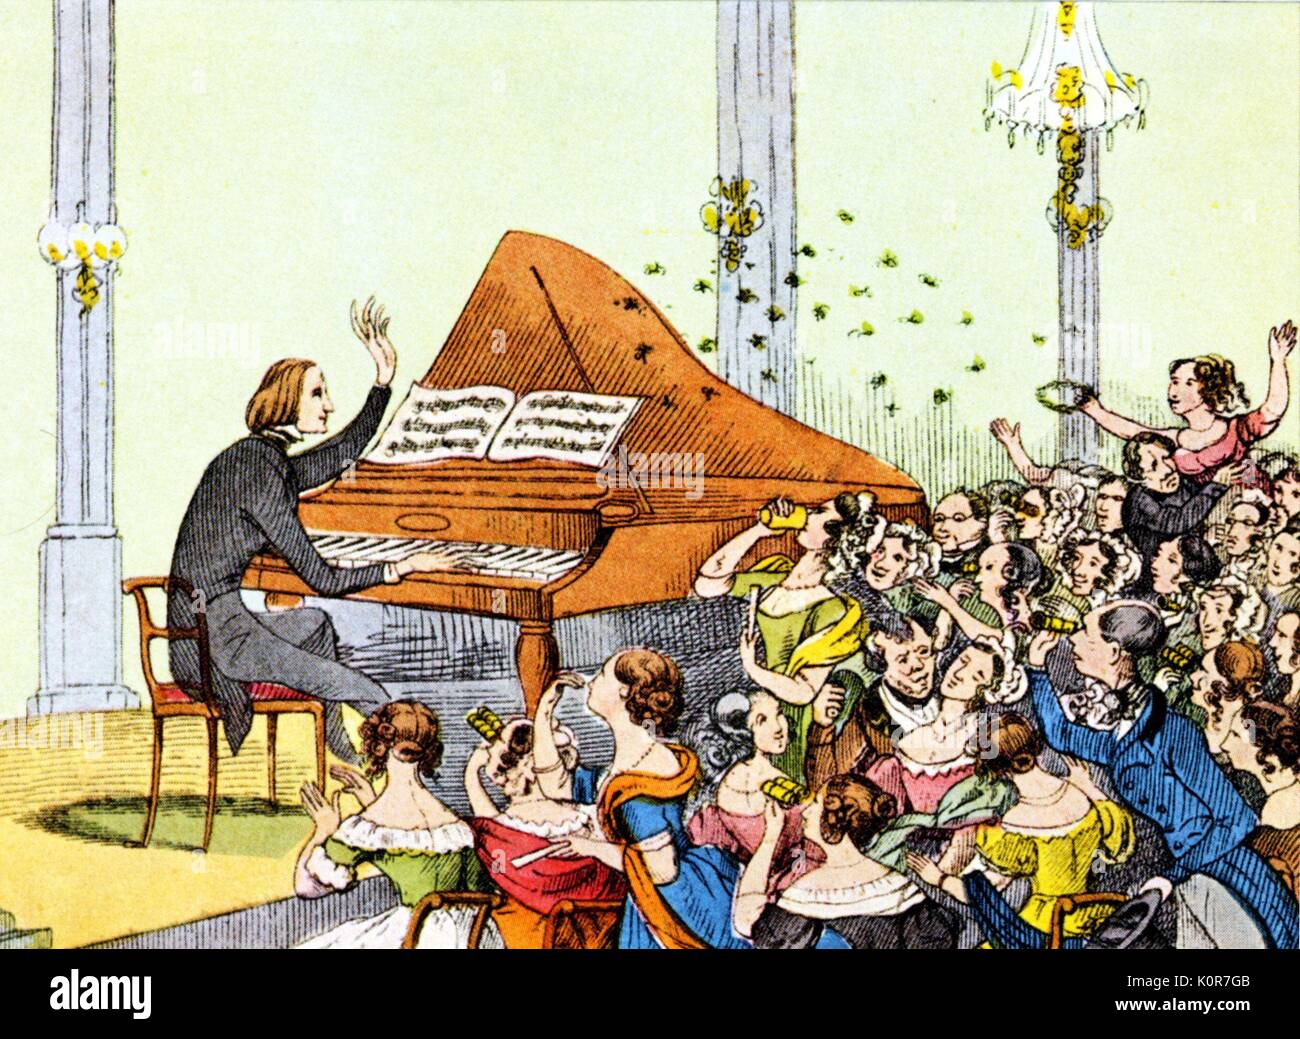 Au cours de Franz Liszt récital de piano à Berlin, 1840. Compositeur et  pianiste hongrois, Illustration par T. Hosemann montrant des femmes femmes  extatiques réponse de fans. Aussi dit être dans Paris